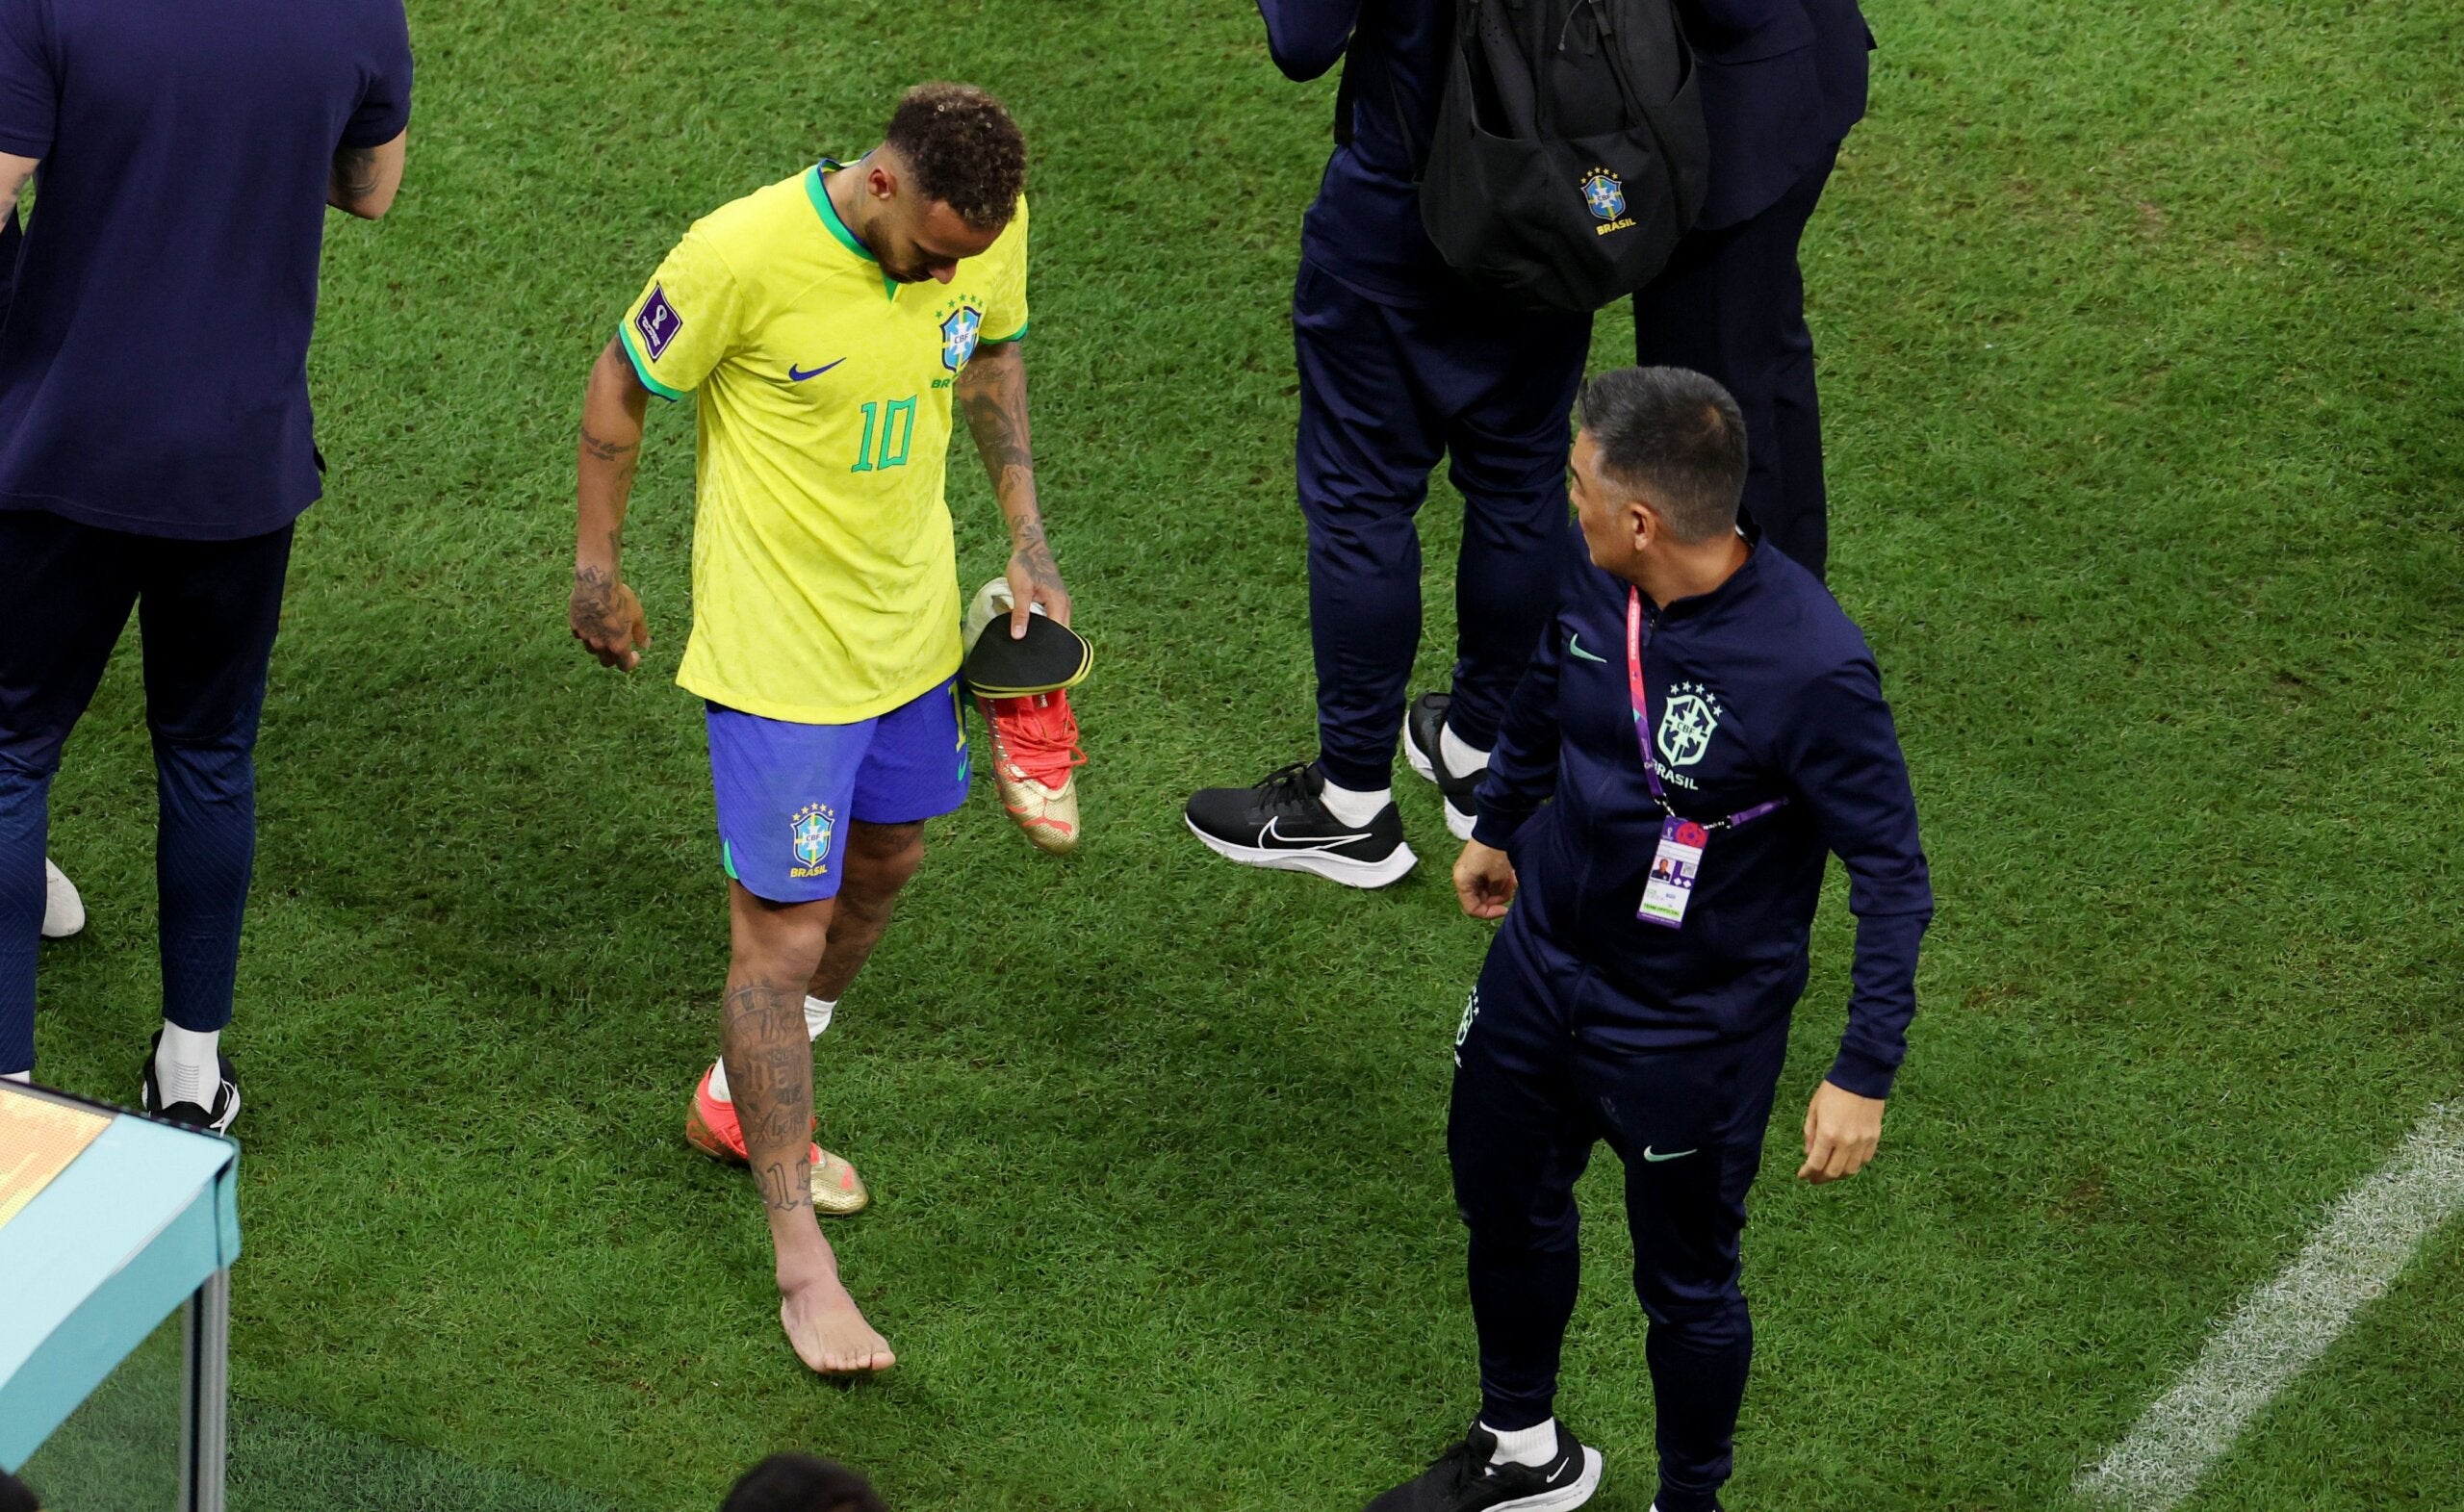 Neymar si ritira dalla competizione per un infortunio alla caviglia.